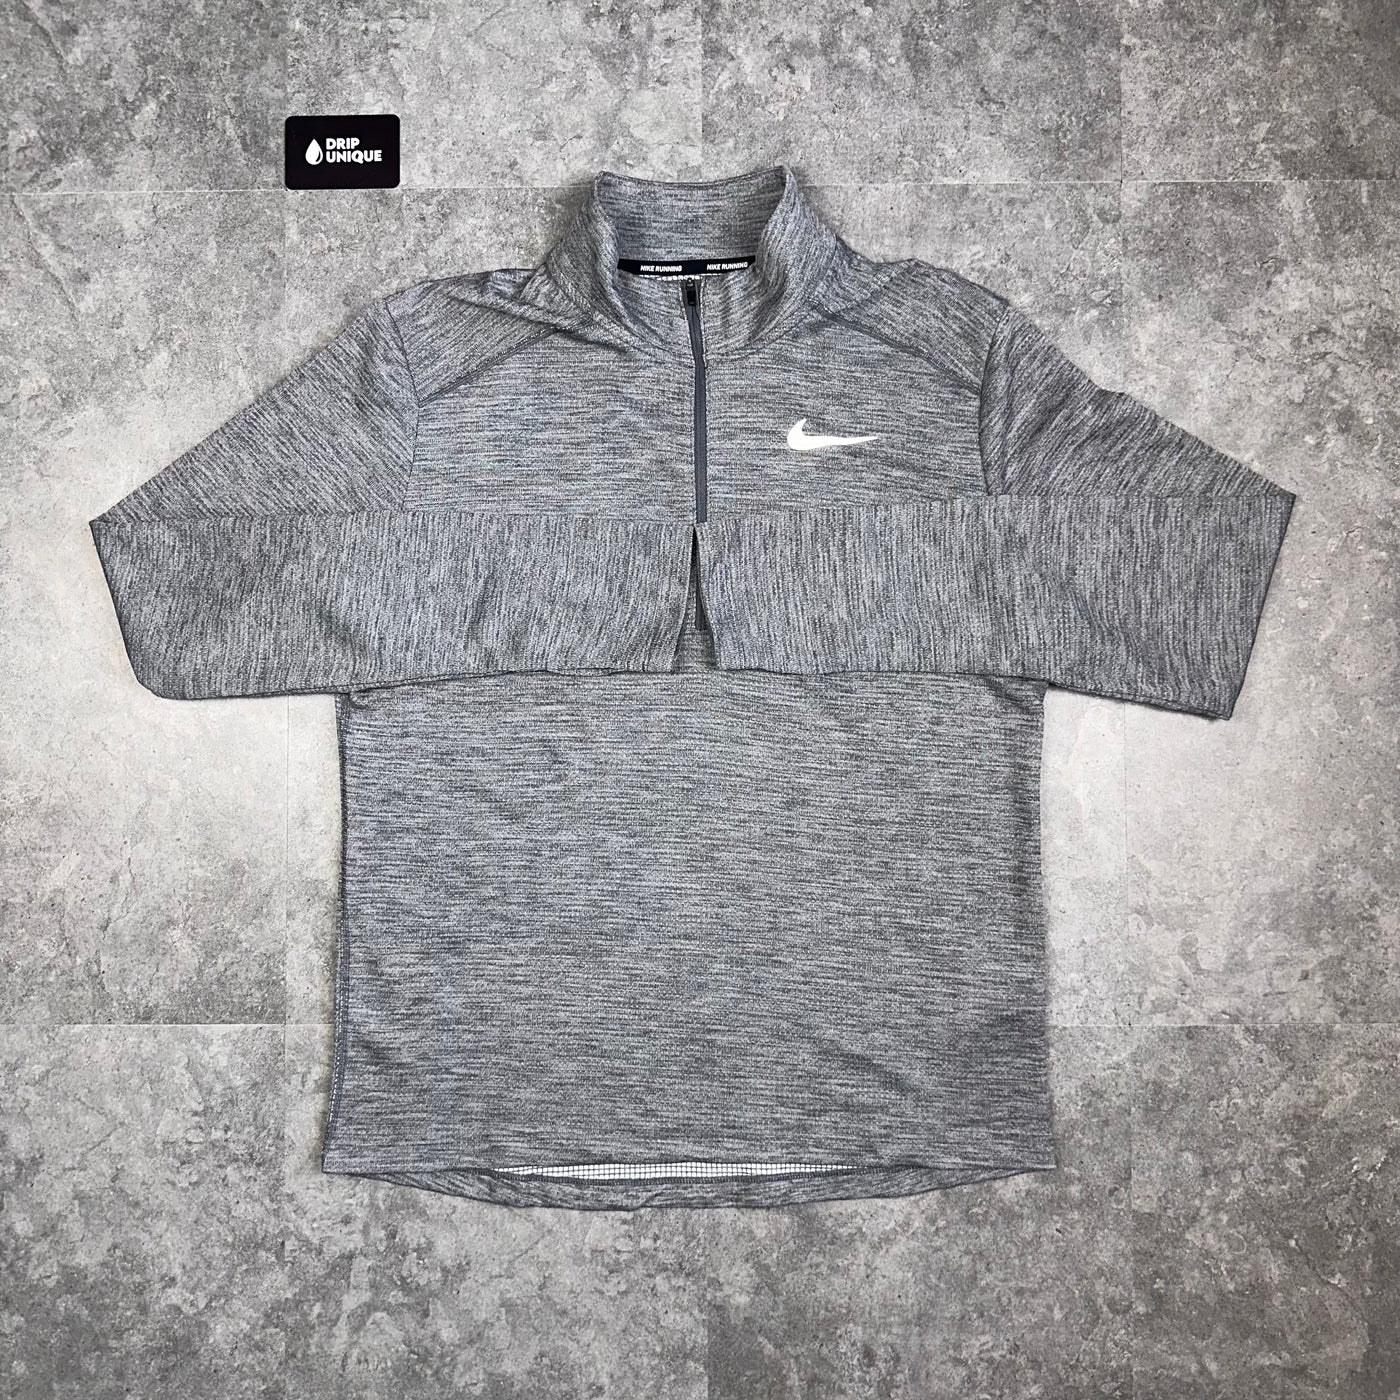 Nike Pacer 1/4 Zip Top Grey